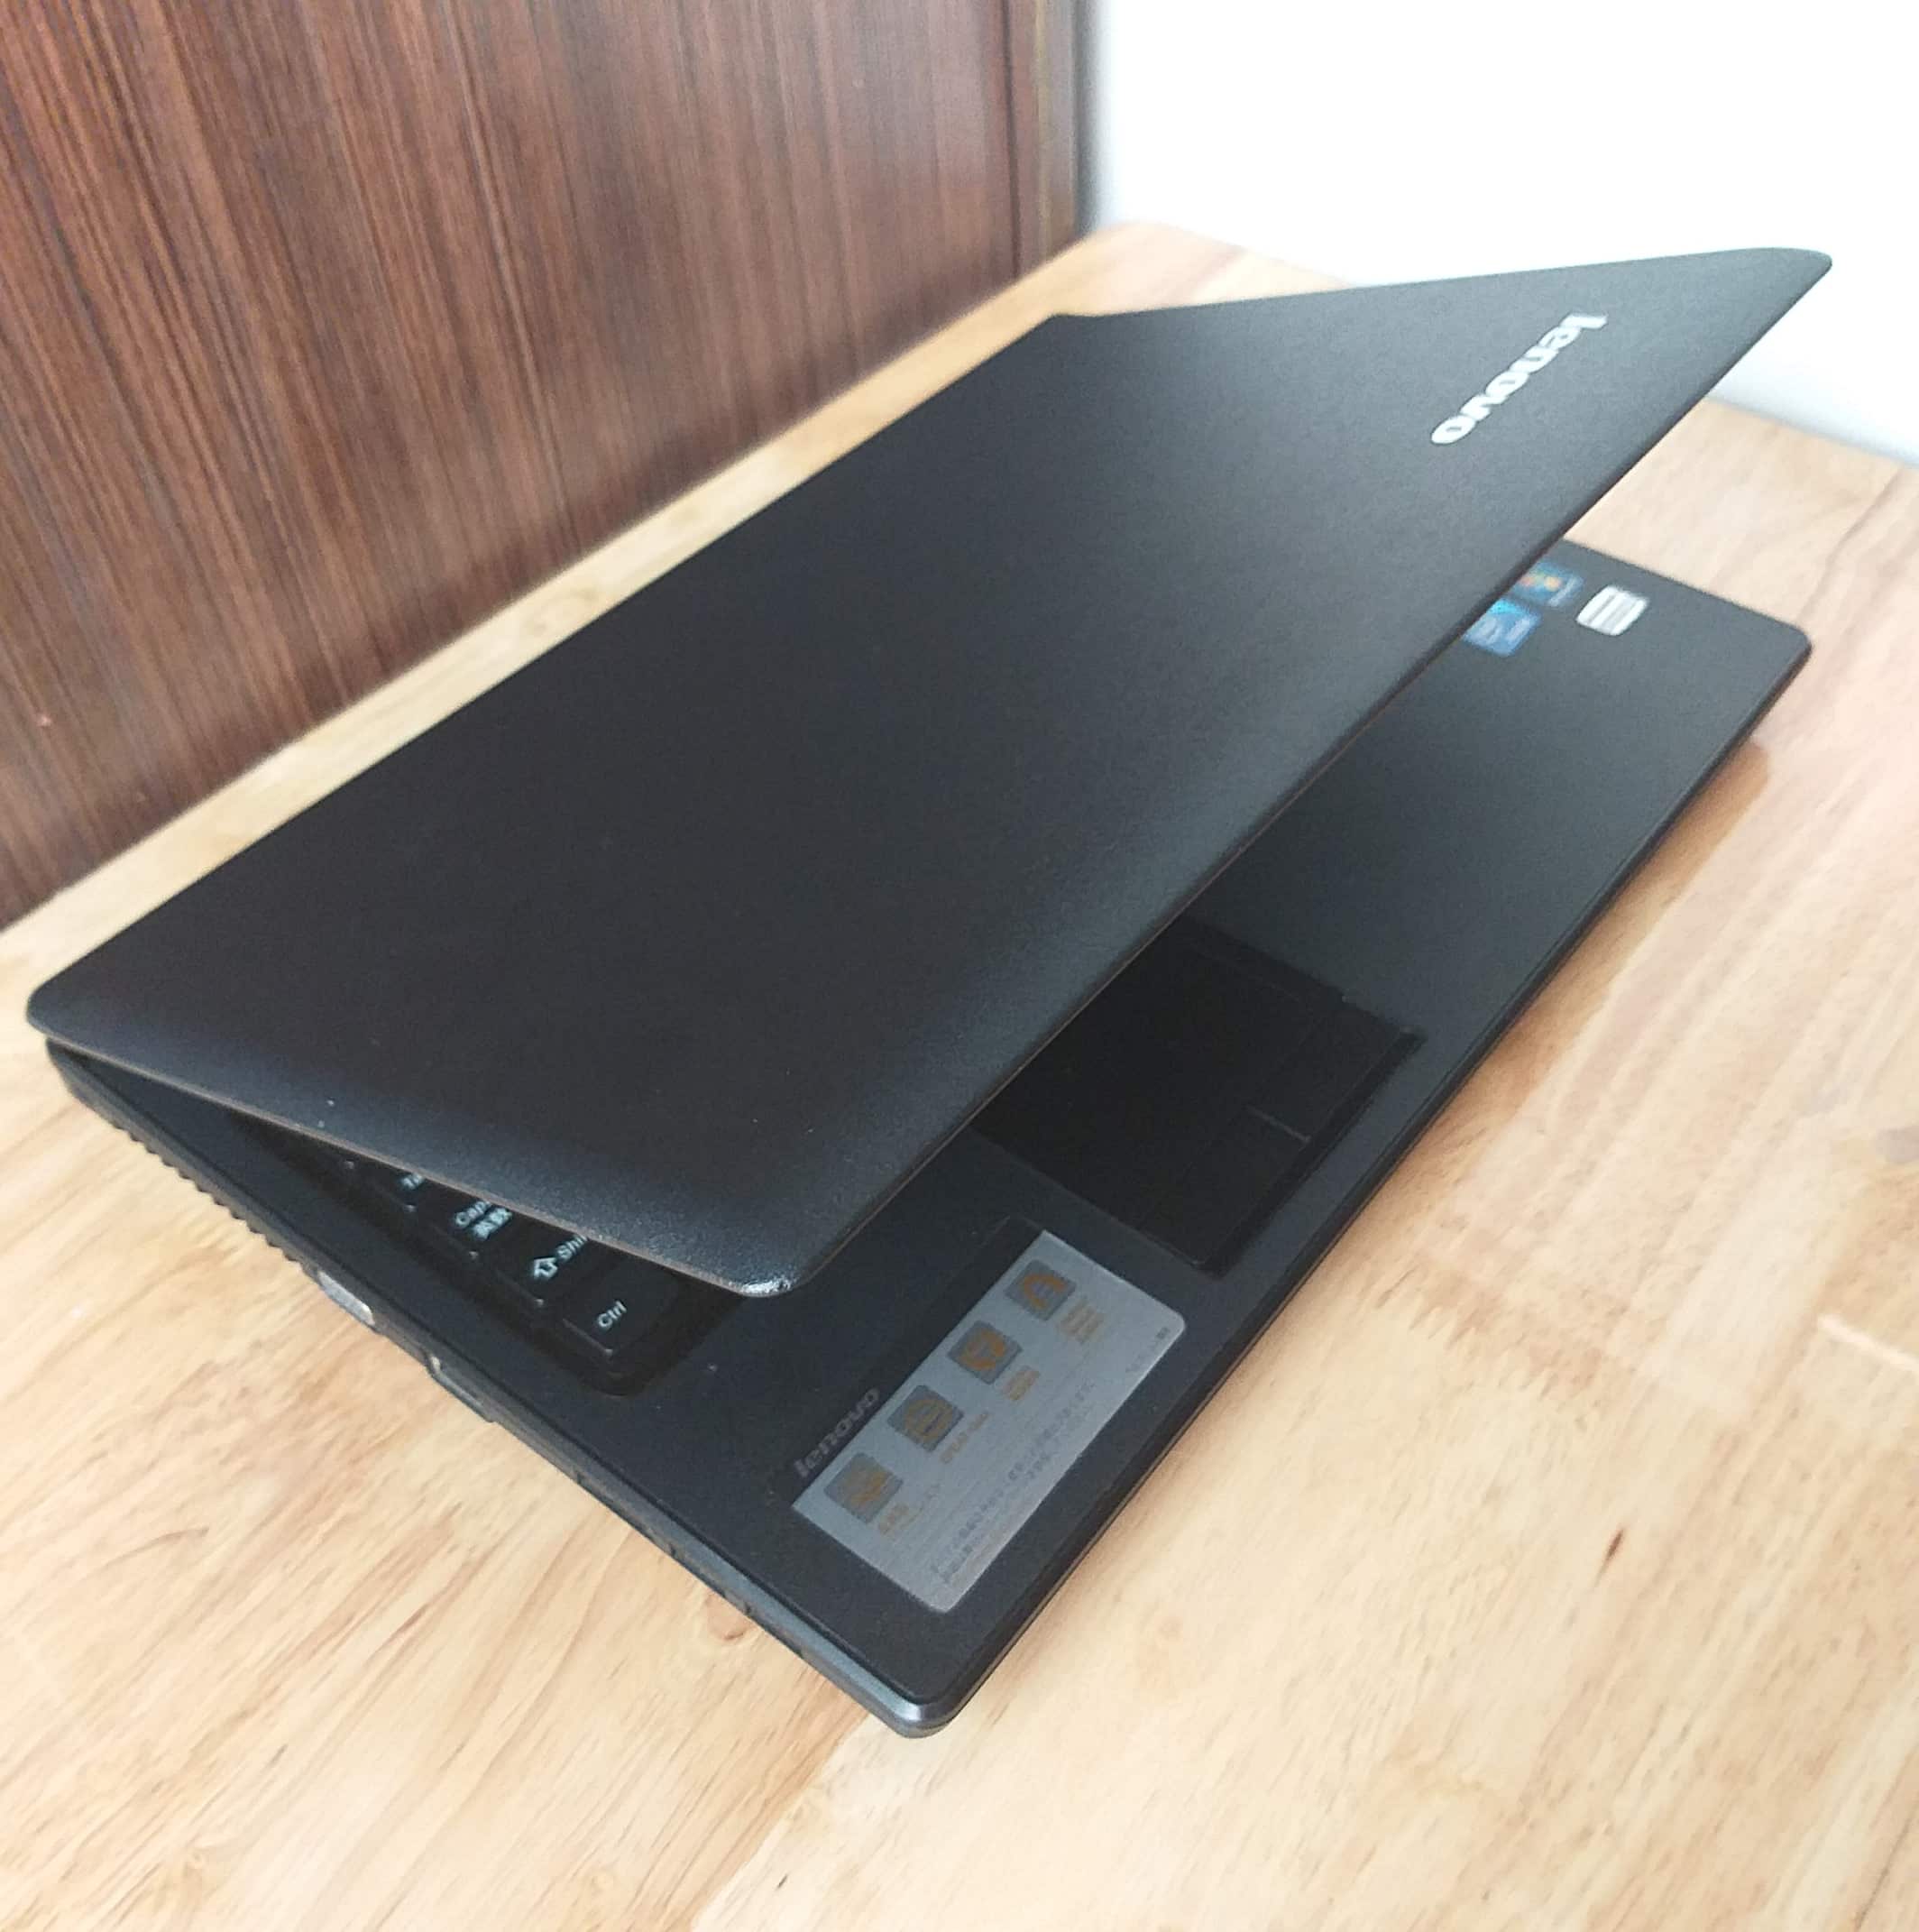 Máy Tính Đại Phát - Chuyên cung cấp laptop cũ giá rẻ uy tín tại Tphcm